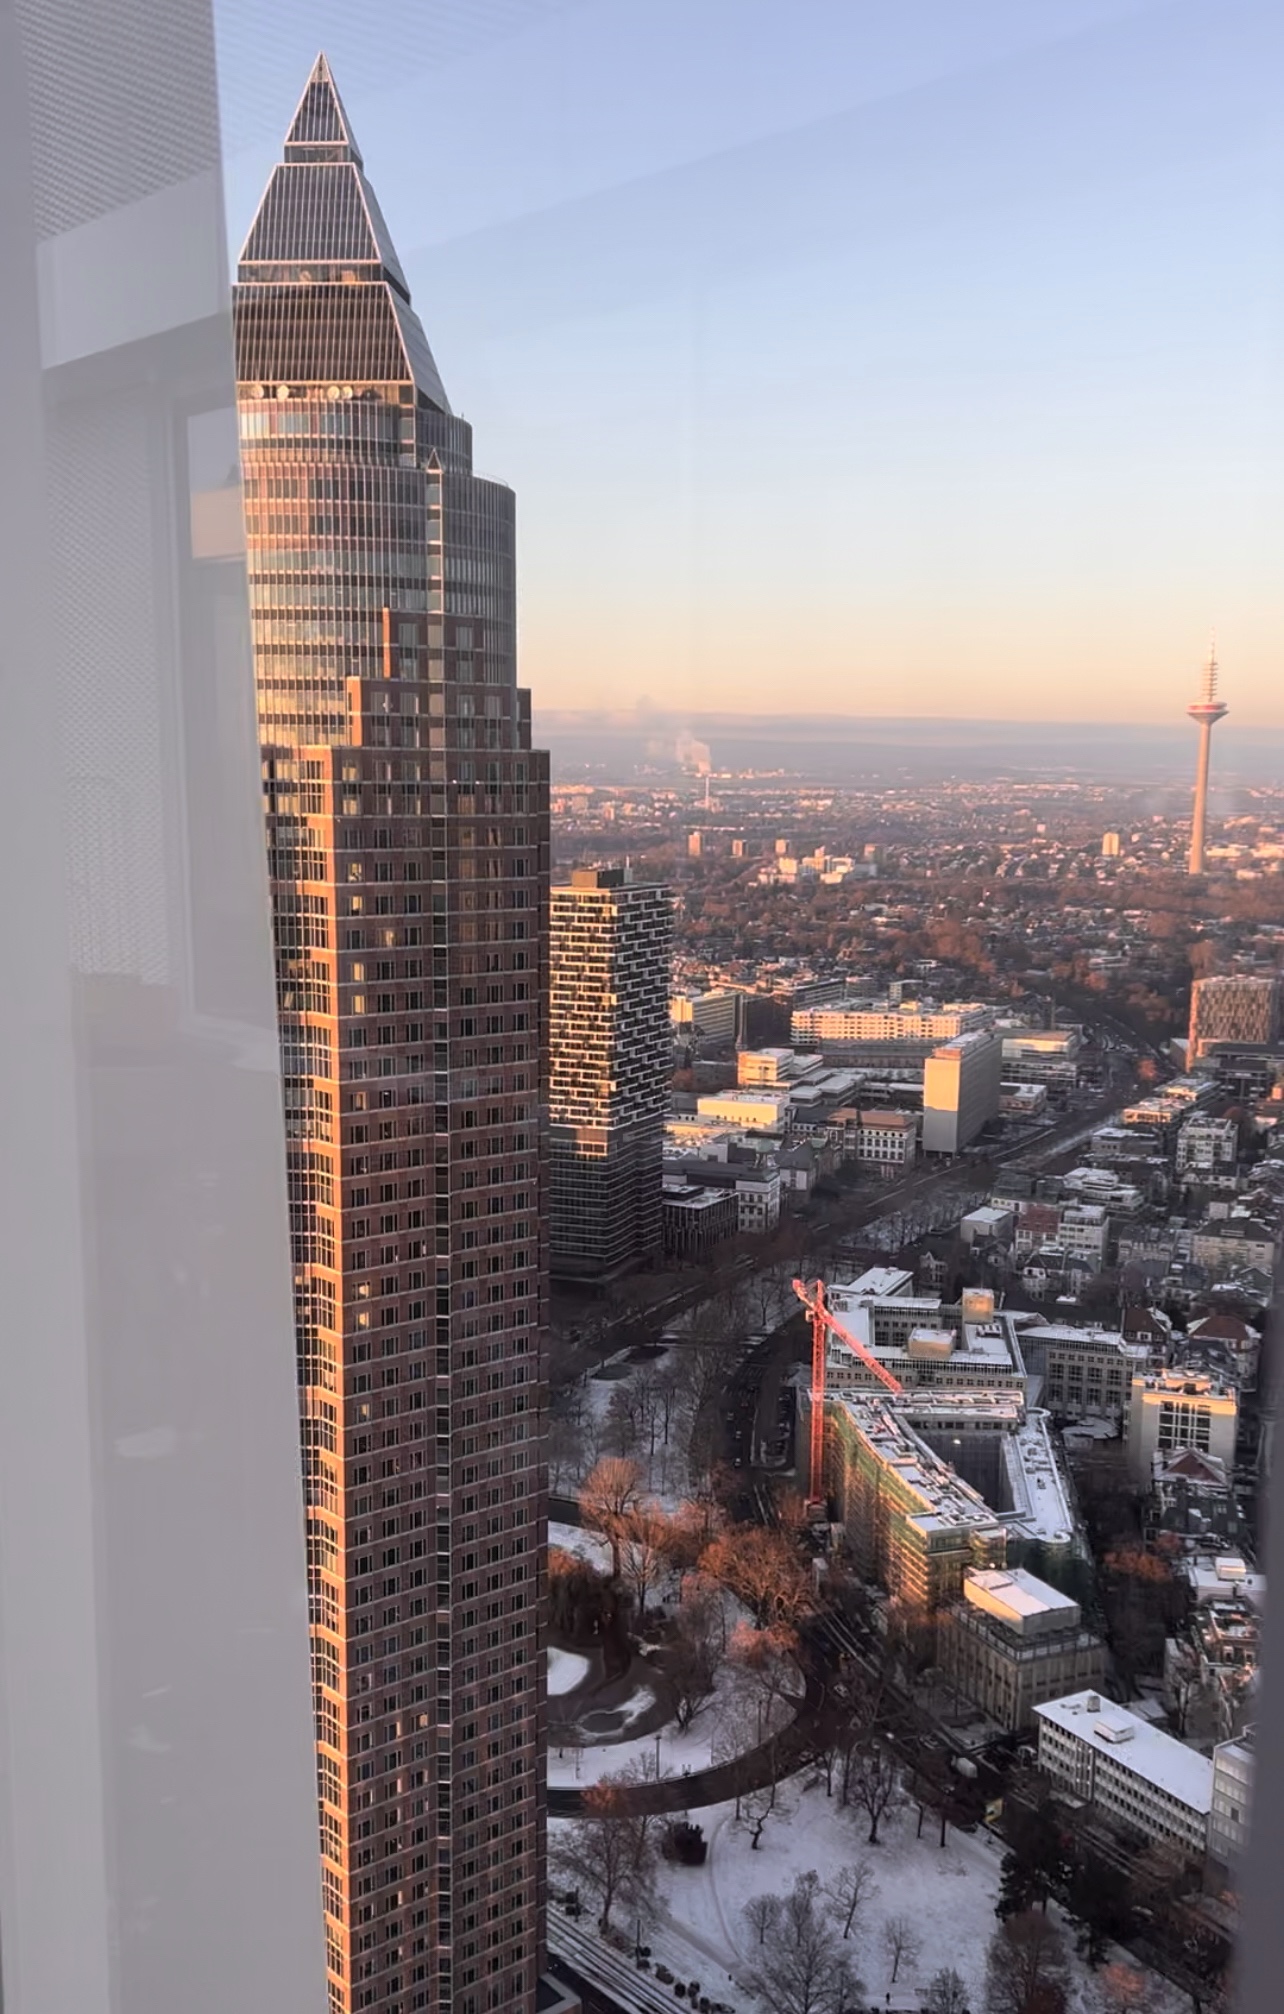 Frankfurt skyline as seen from NFT Rooftop Bar